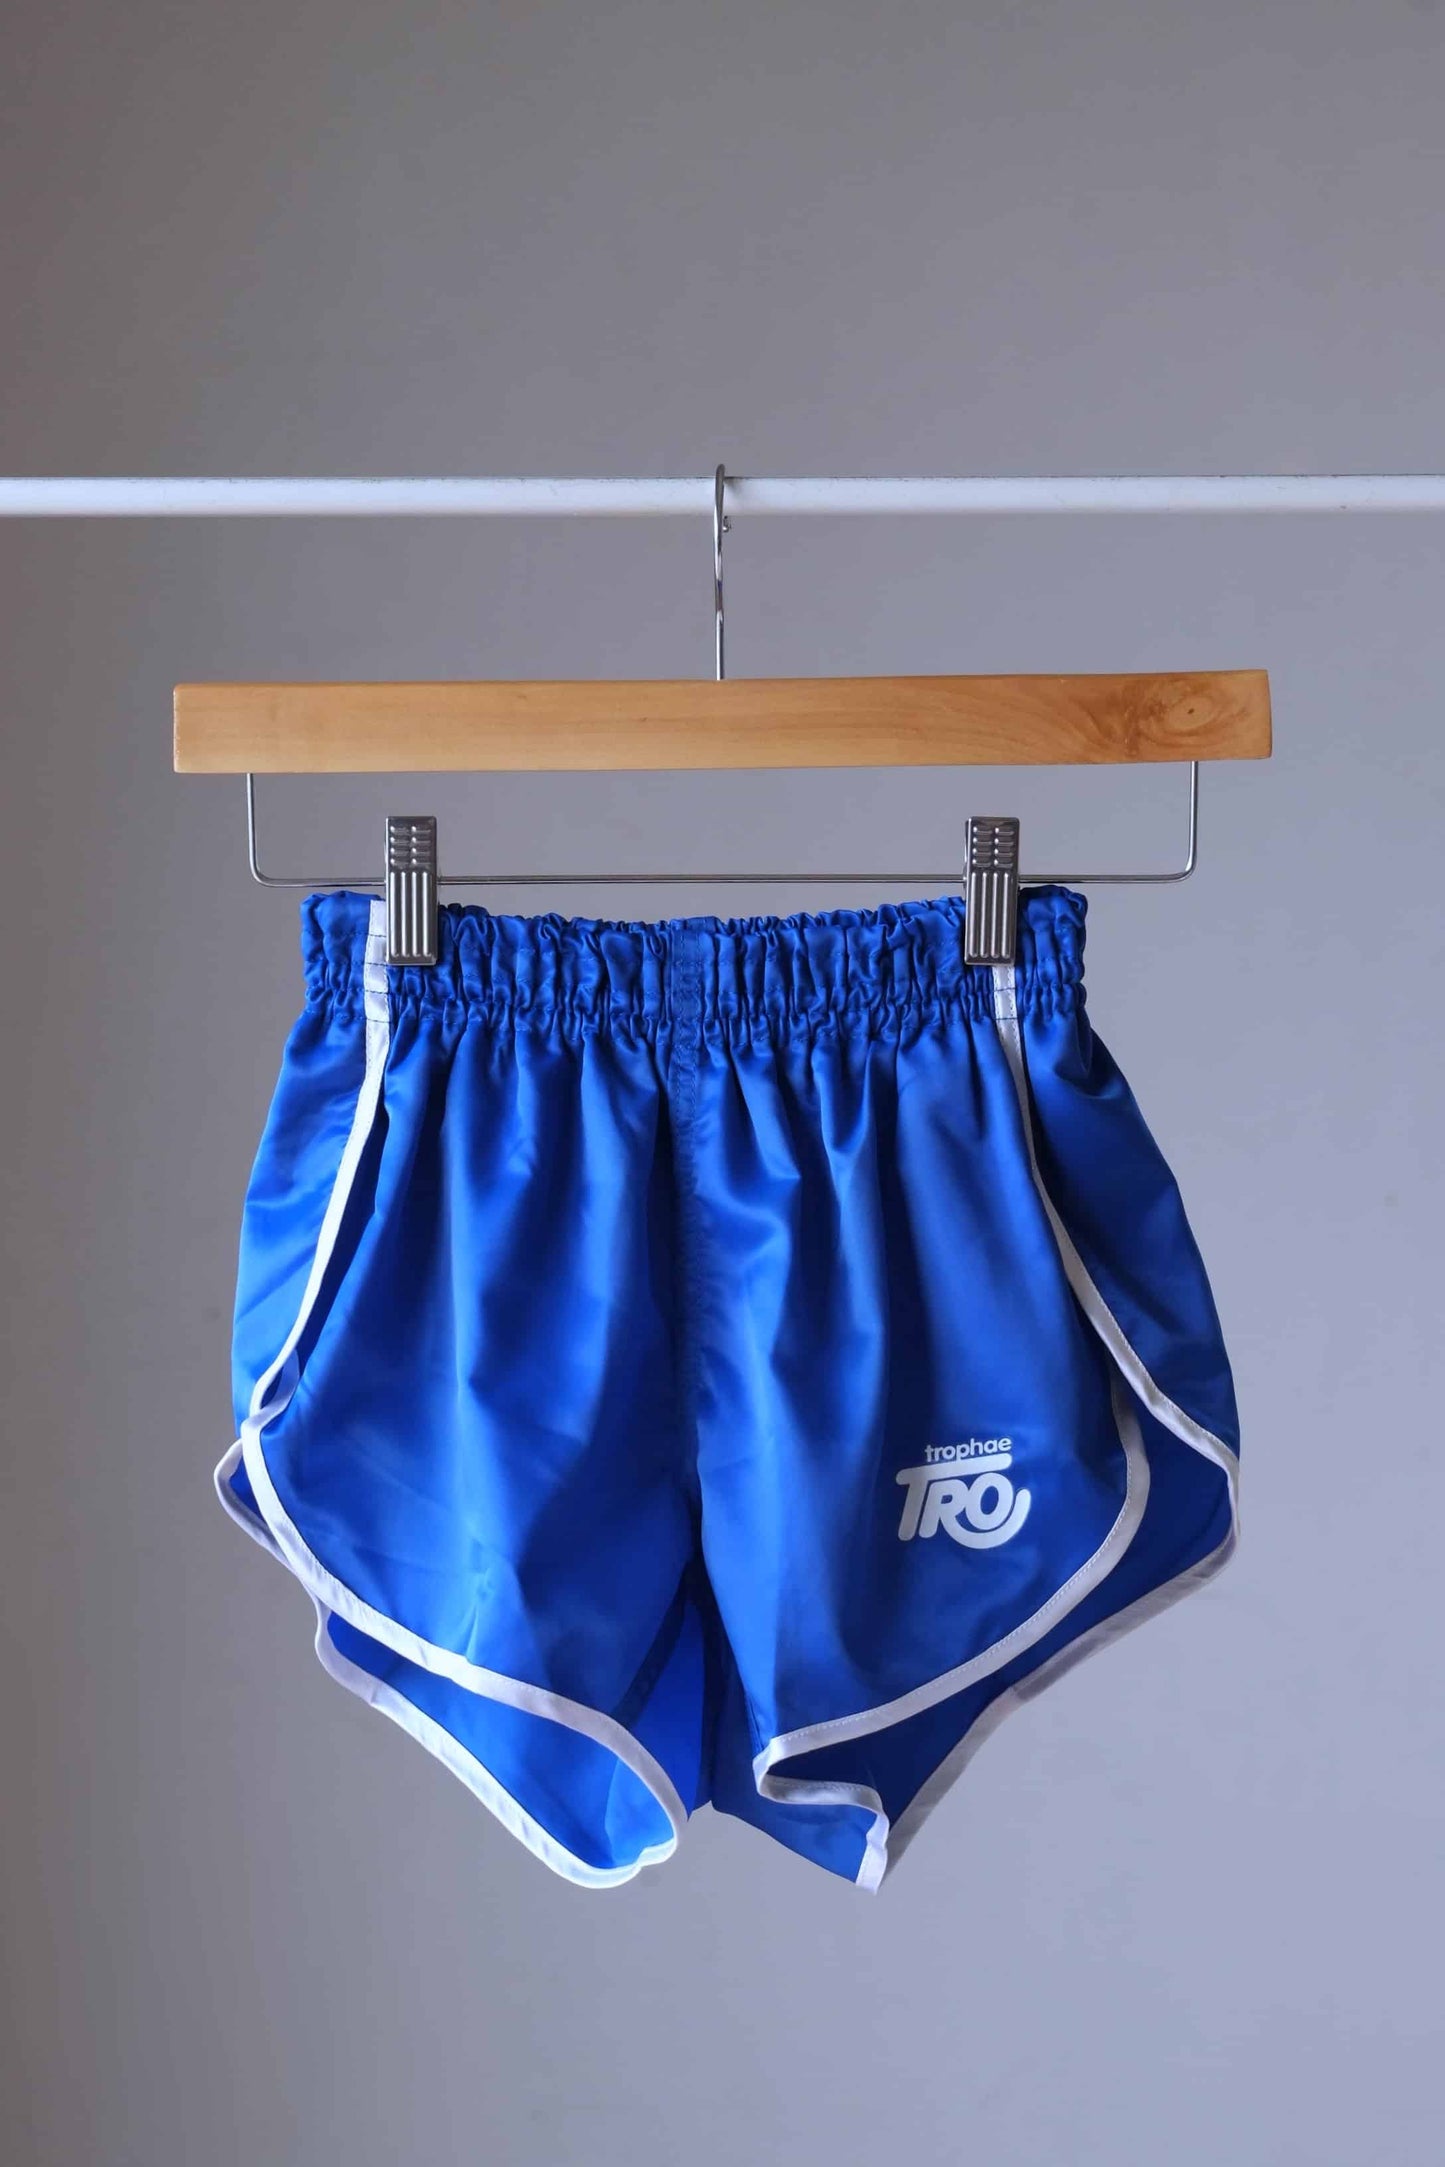 Vintage Satin 80's Jogging Shorts blue